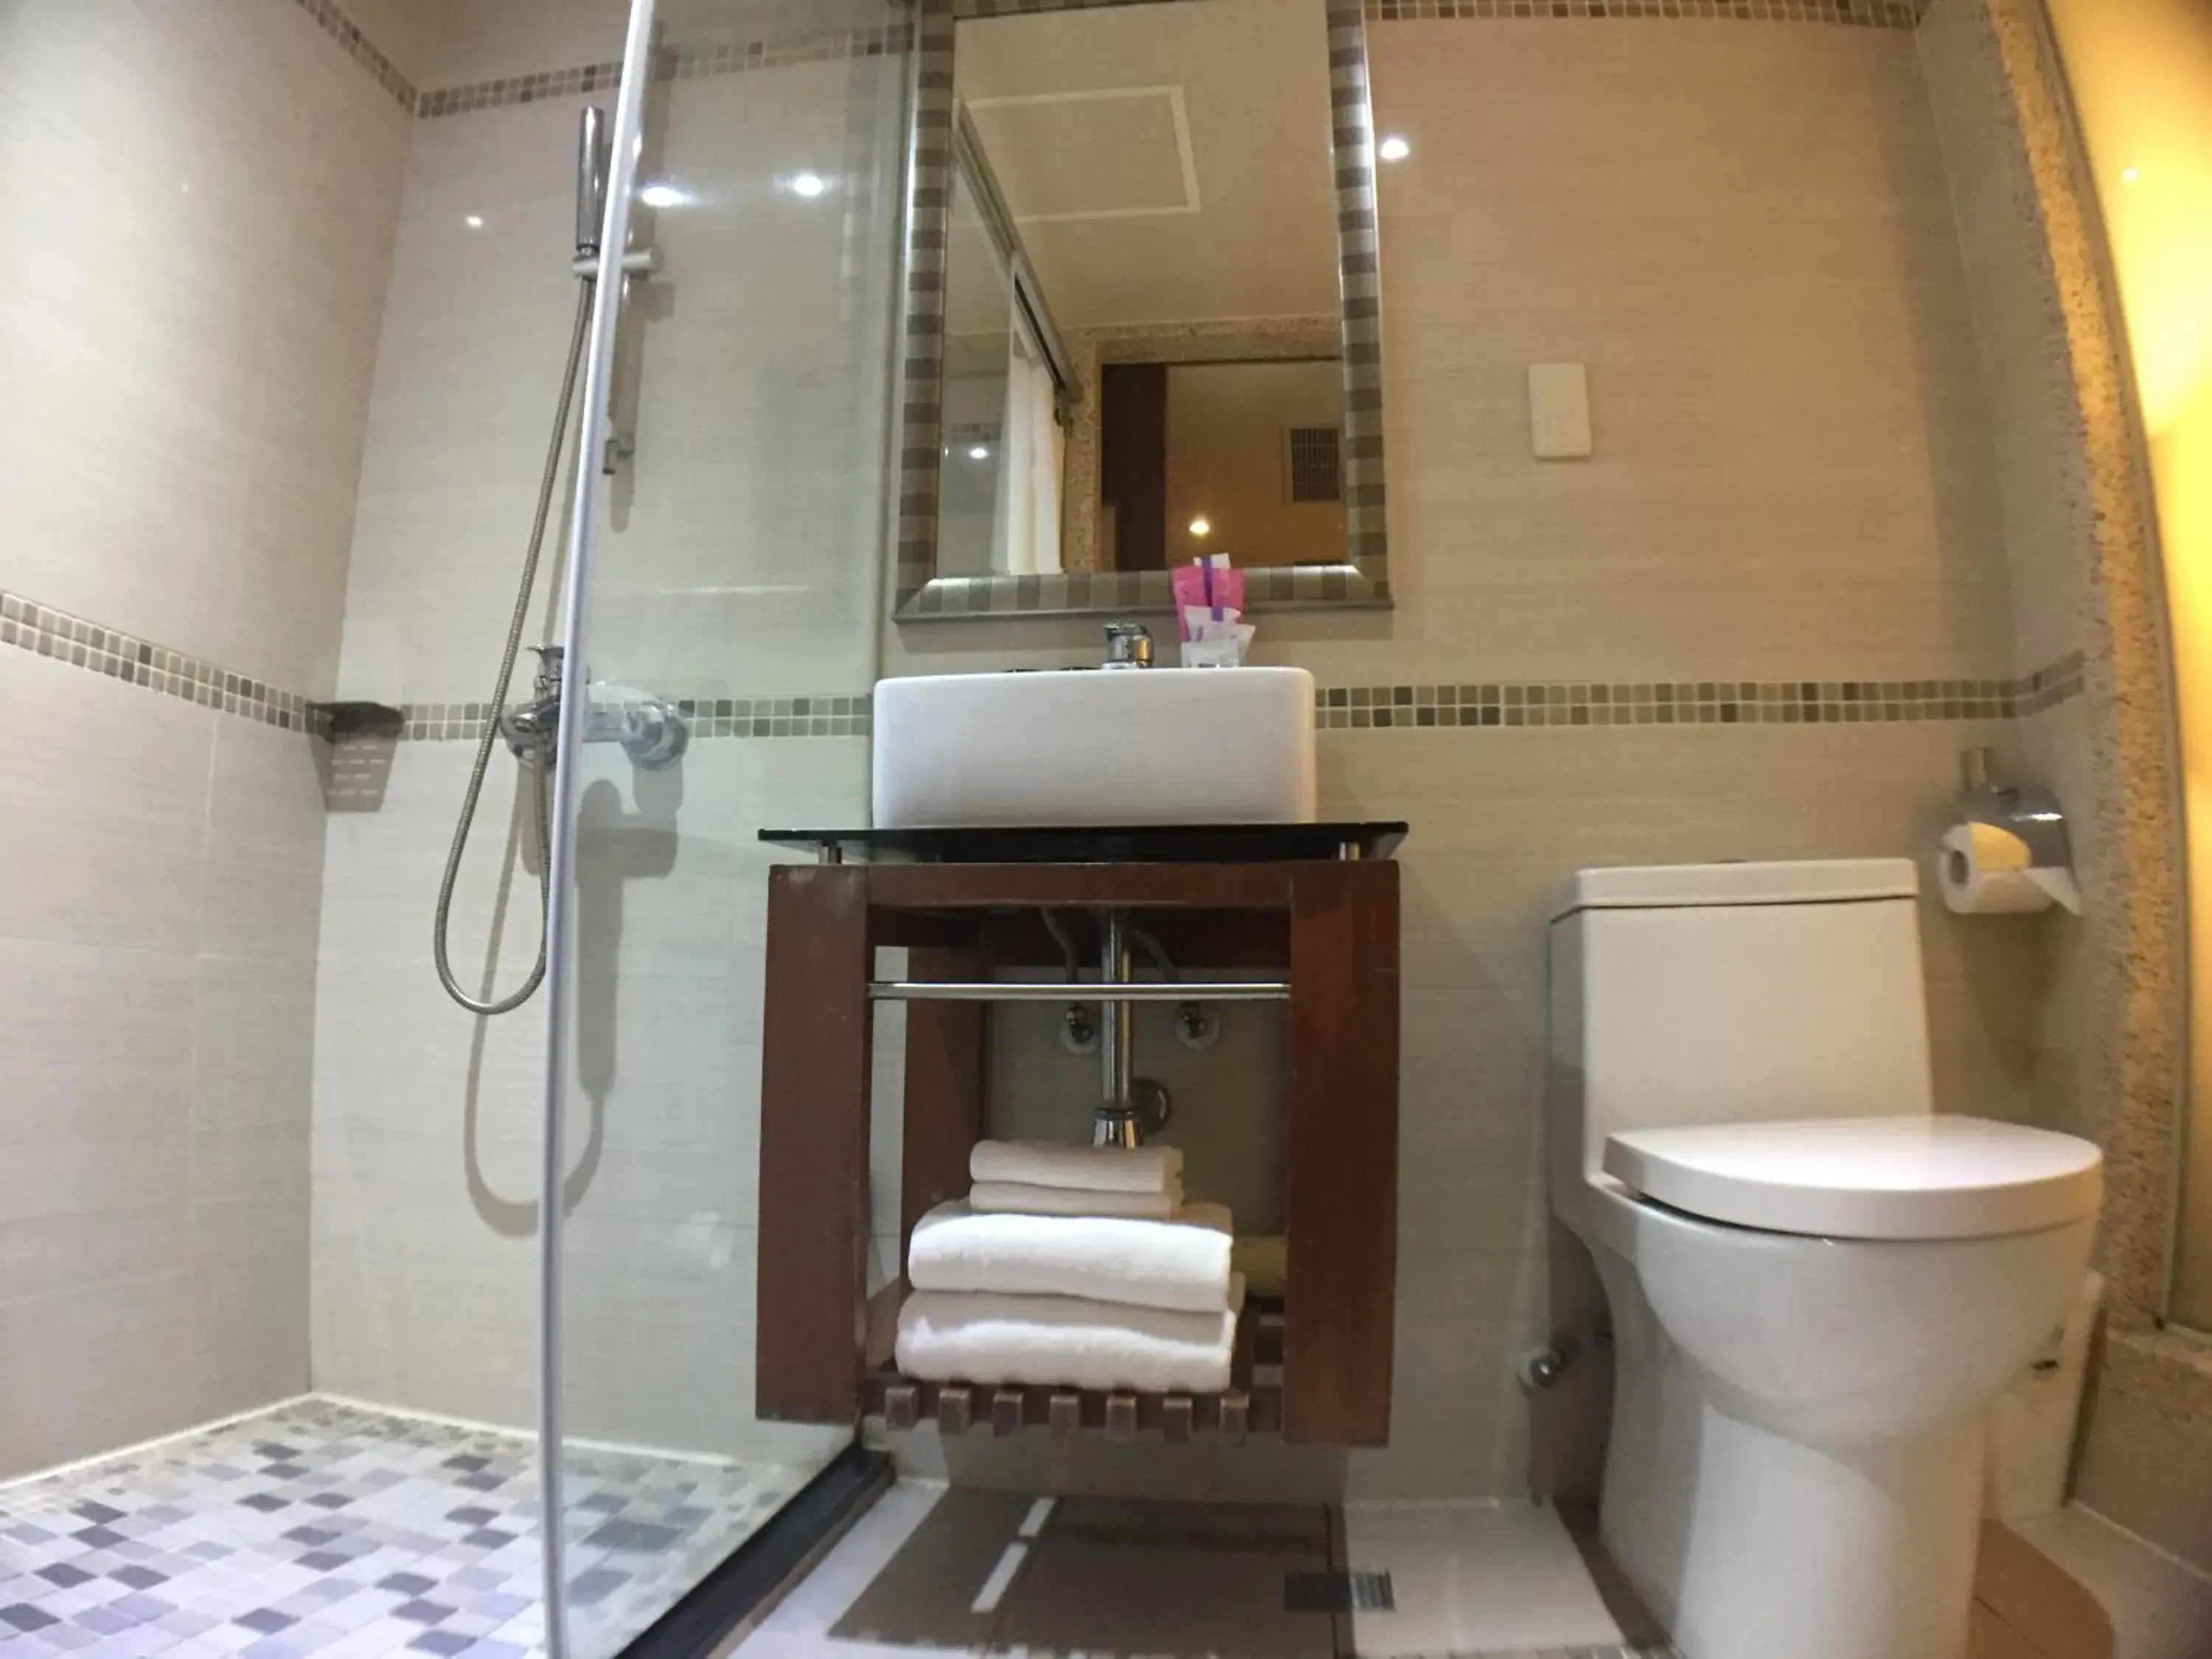 Bathroom in Paris Business Hotel